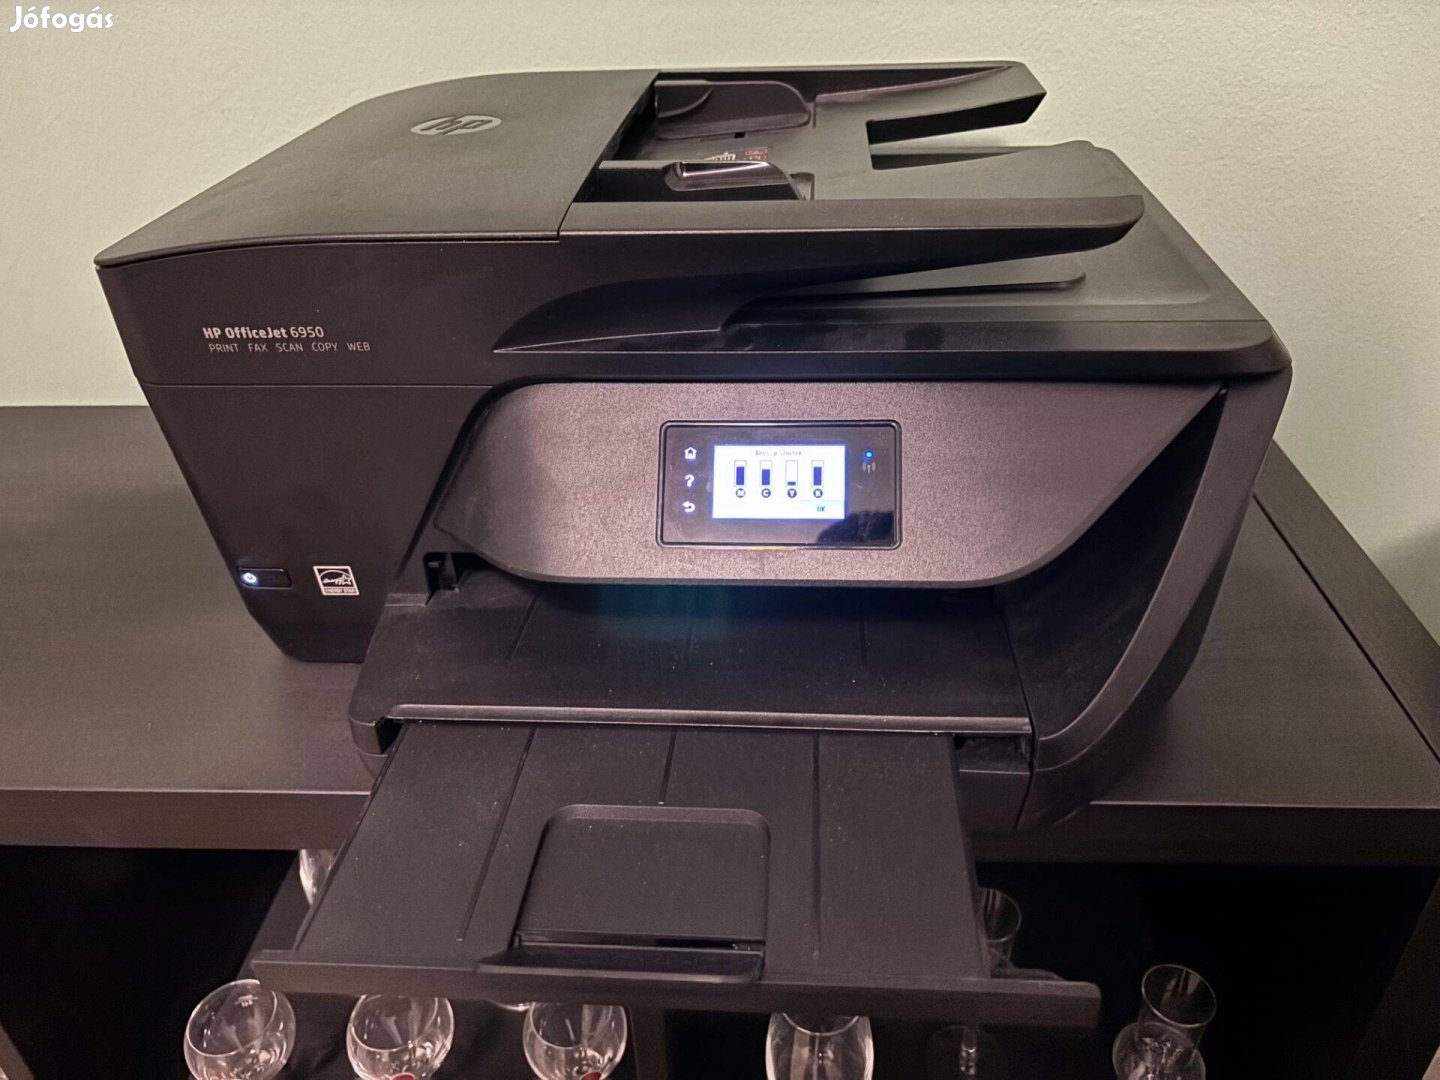 HP Officejet 6950 multifunkciós nyomtató, újszerű, tintával